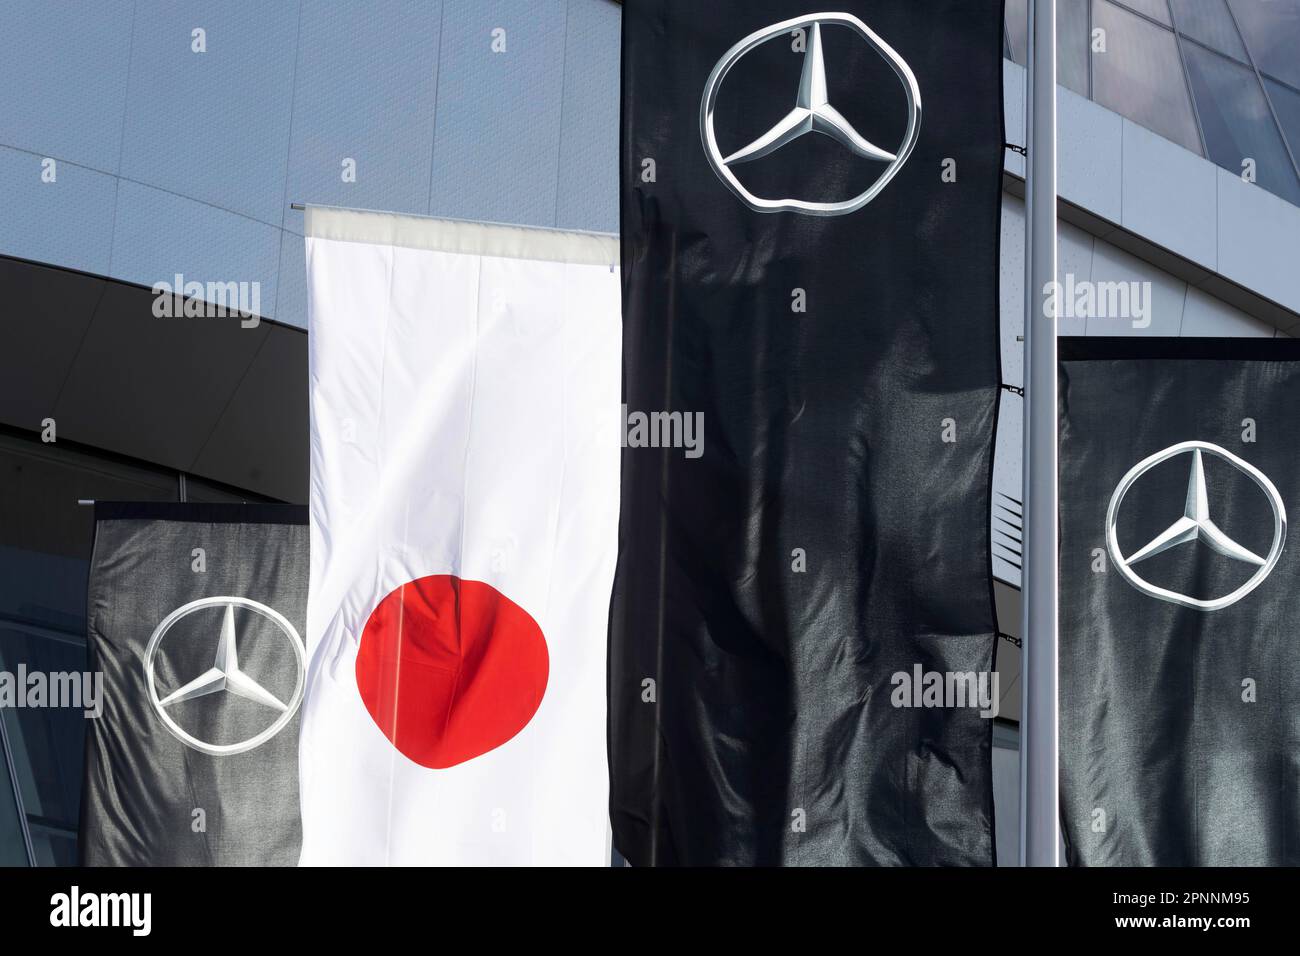 Mercedes-Benz Museum, Stoccarda, architettura ben van Berkel, UNStudio. Di fronte alle bandiere di Mercedes e la bandiera del Giappone, industria automobilistica Foto Stock